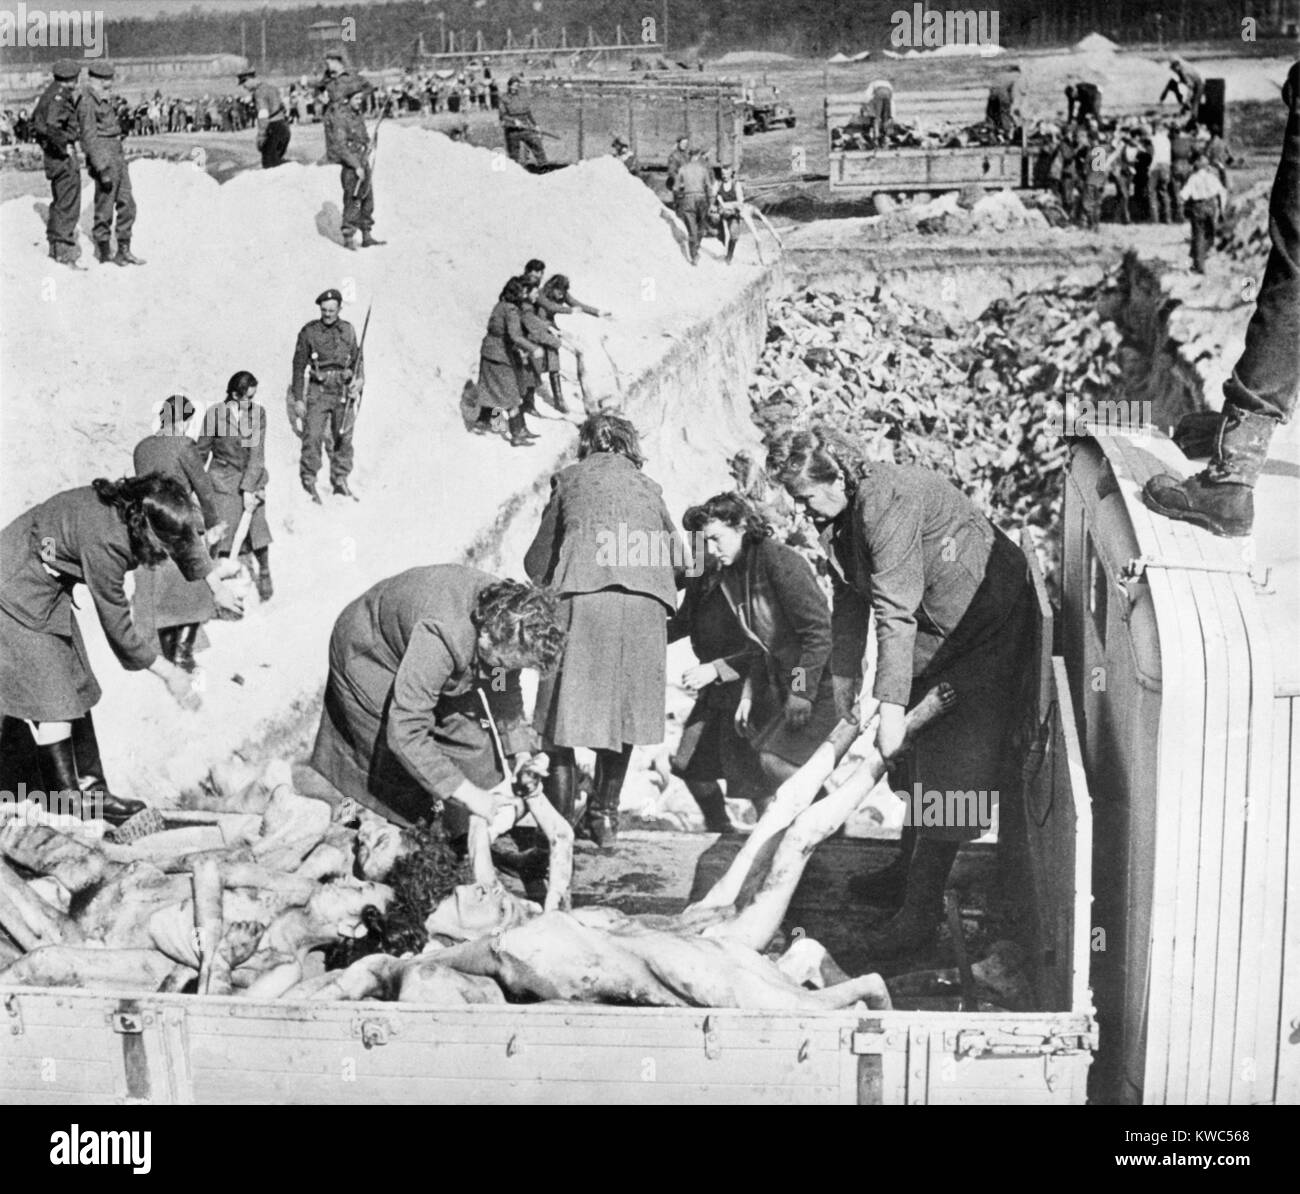 Les femmes SS nazis enlever les gardes corps des victimes d'un camion au cours de l'enfouissement au camp de concentration de Belsen. British solders guard et supervise le travail. Avril 1945, la Première Guerre mondiale (BSLOC 2015 2 13 8) Banque D'Images